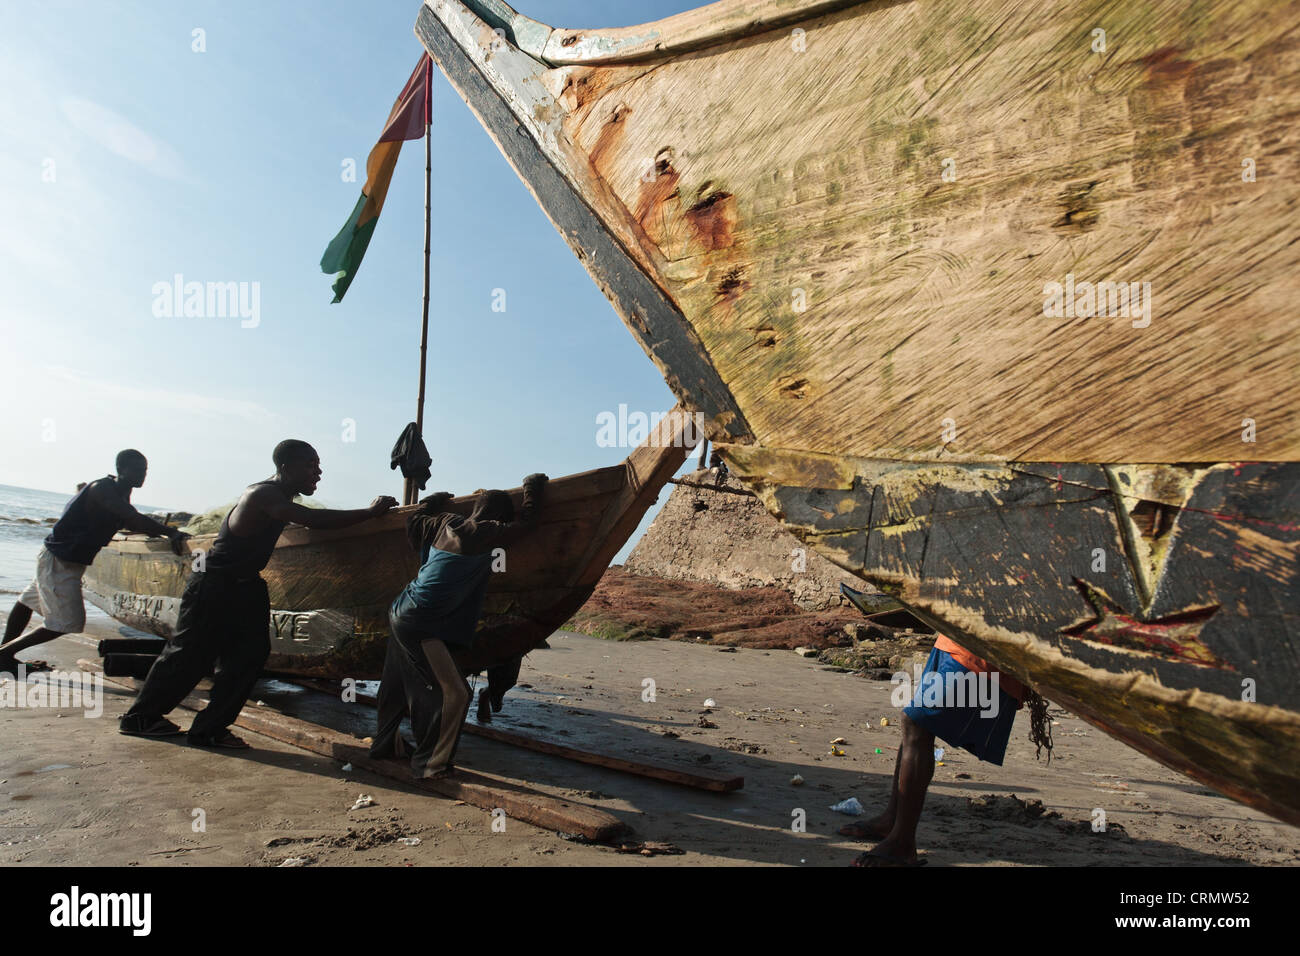 Los pescadores tirando de su barco en la playa de Cape Coast, Ghana Foto de stock